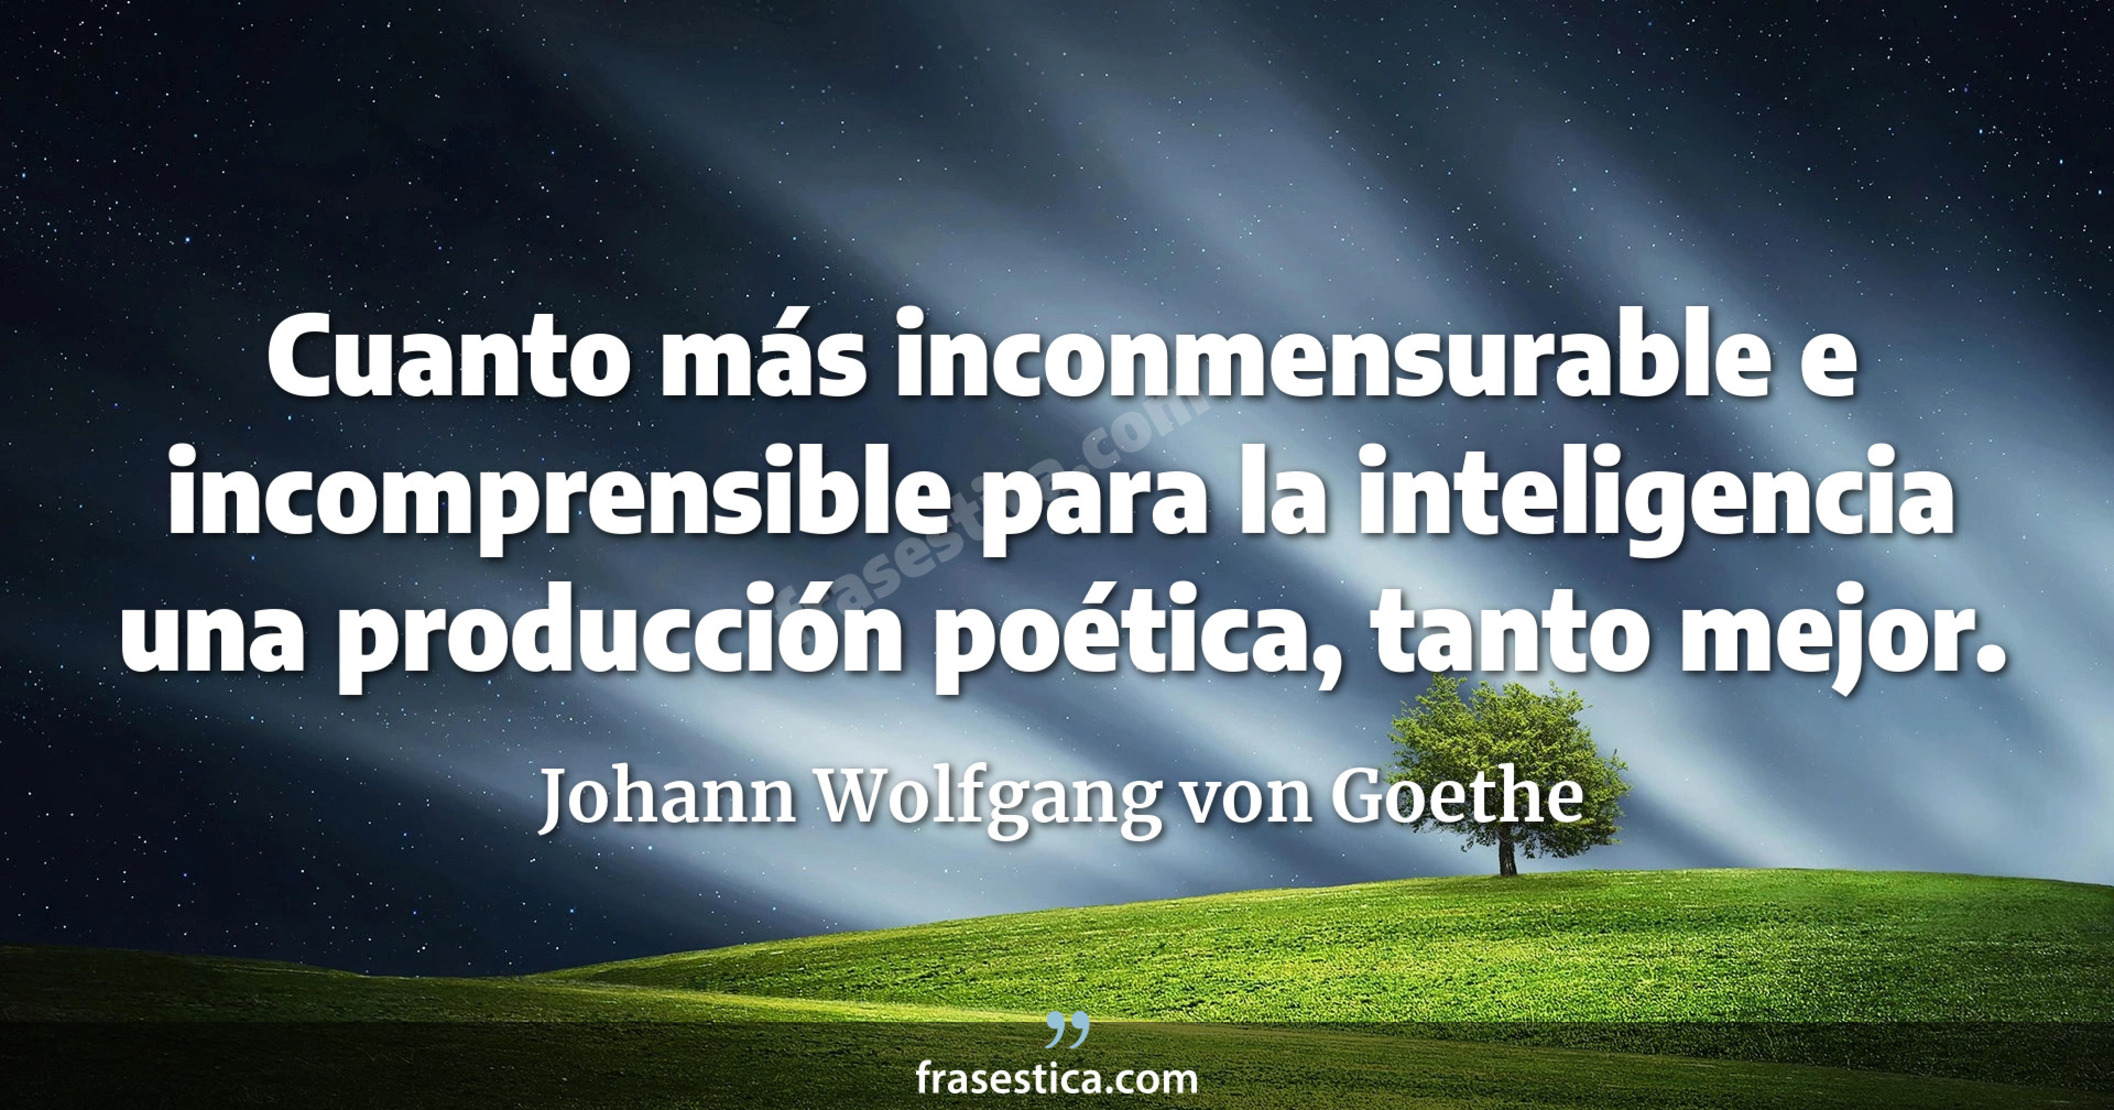 Cuanto más inconmensurable e incomprensible para la inteligencia una producción poética, tanto mejor. - Johann Wolfgang von Goethe